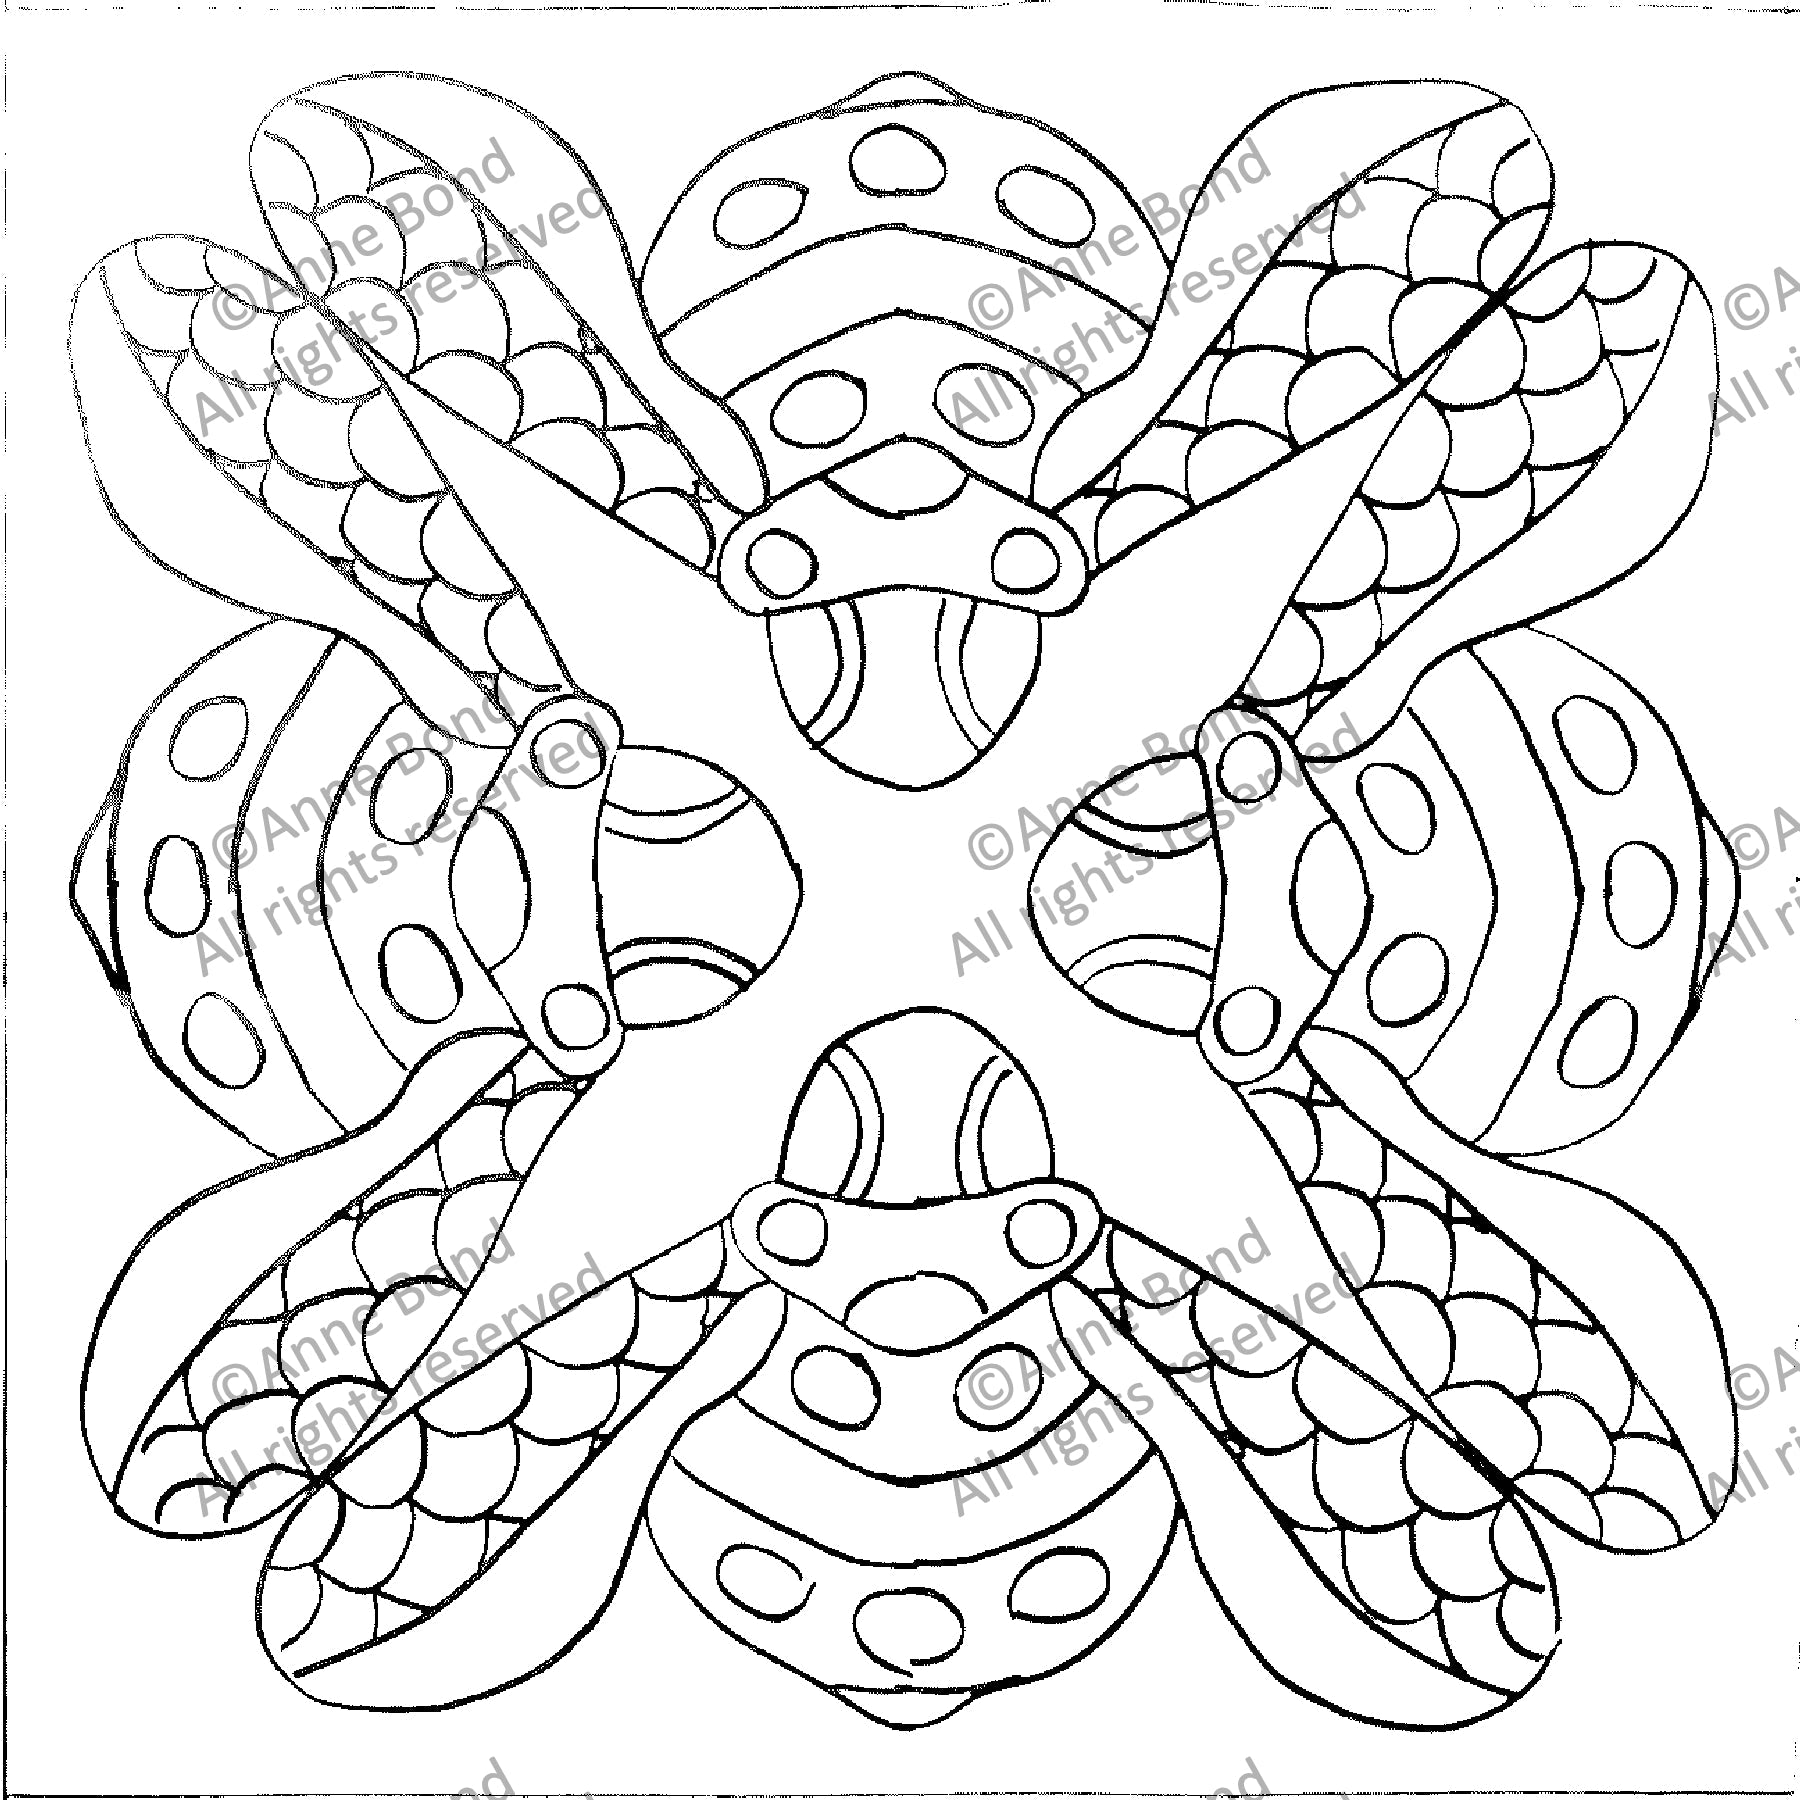 Bee Friends, rug hooking pattern